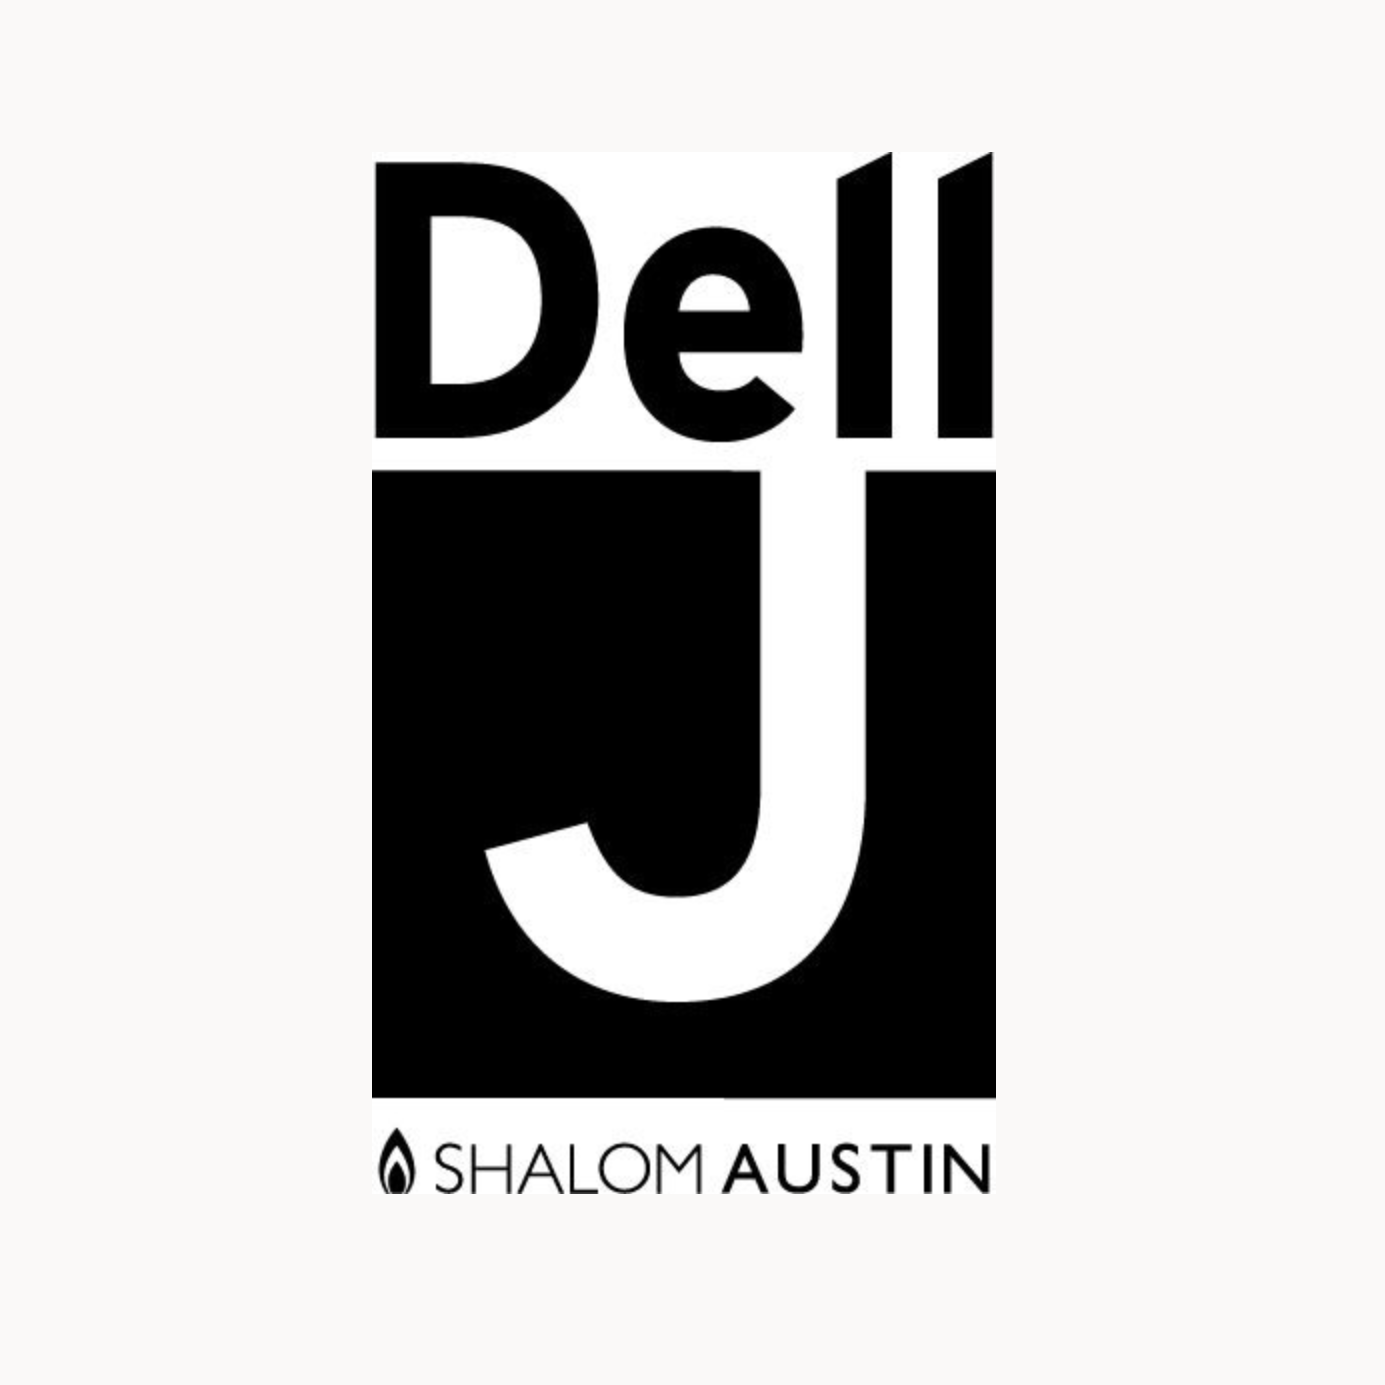 Dell JCC logo